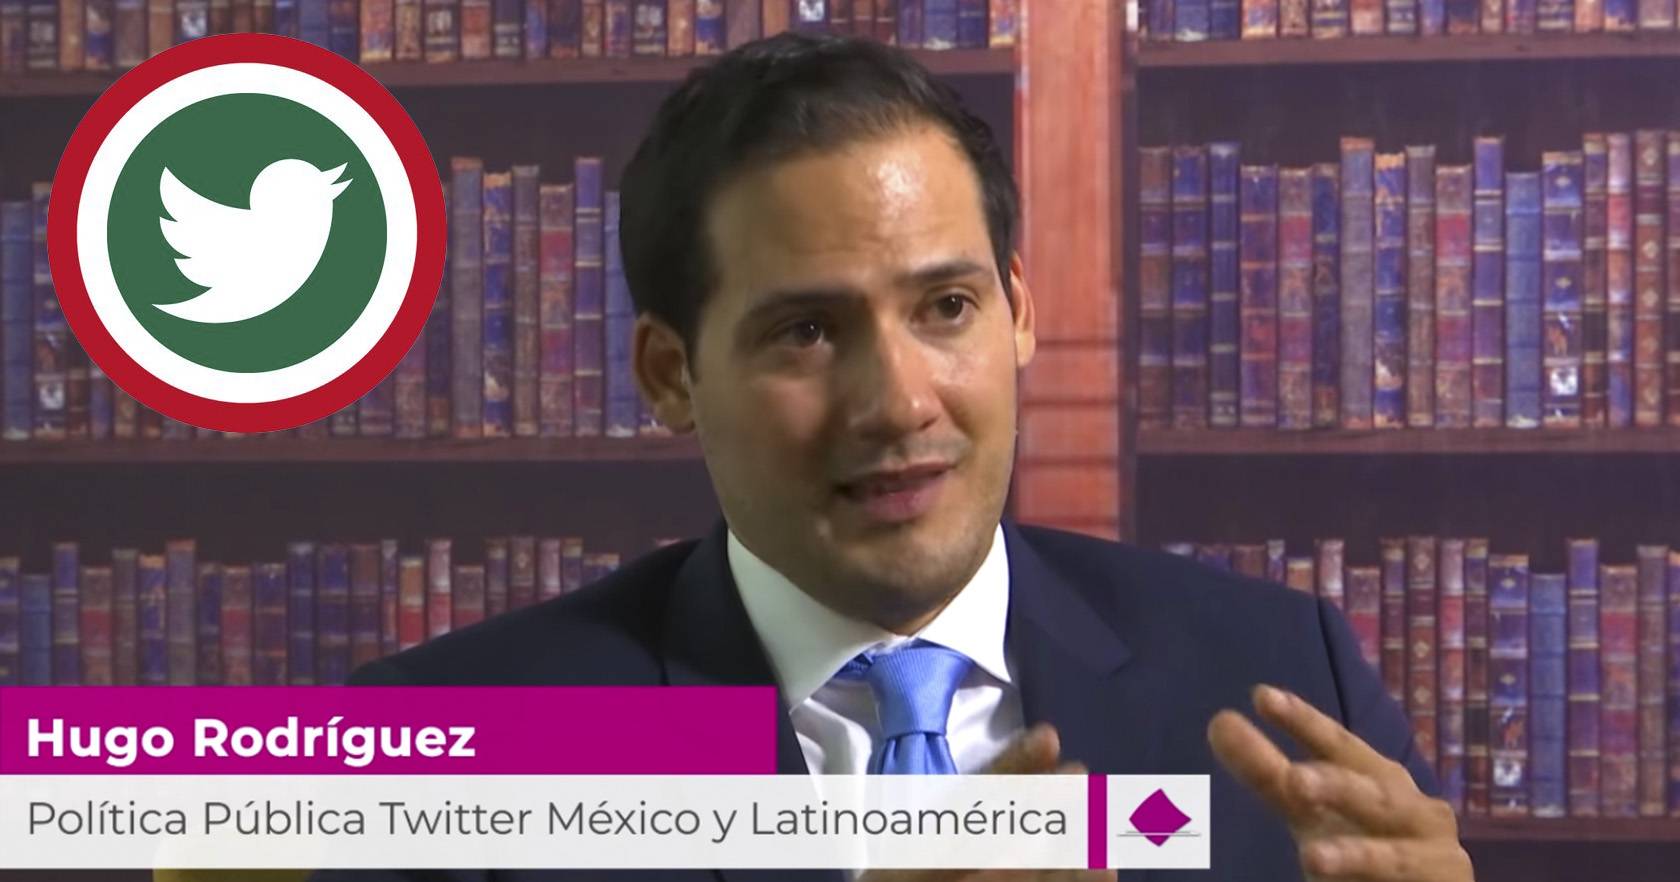 INE entrevistó a director de Twitter México en 2019 por "su papel en la elección"